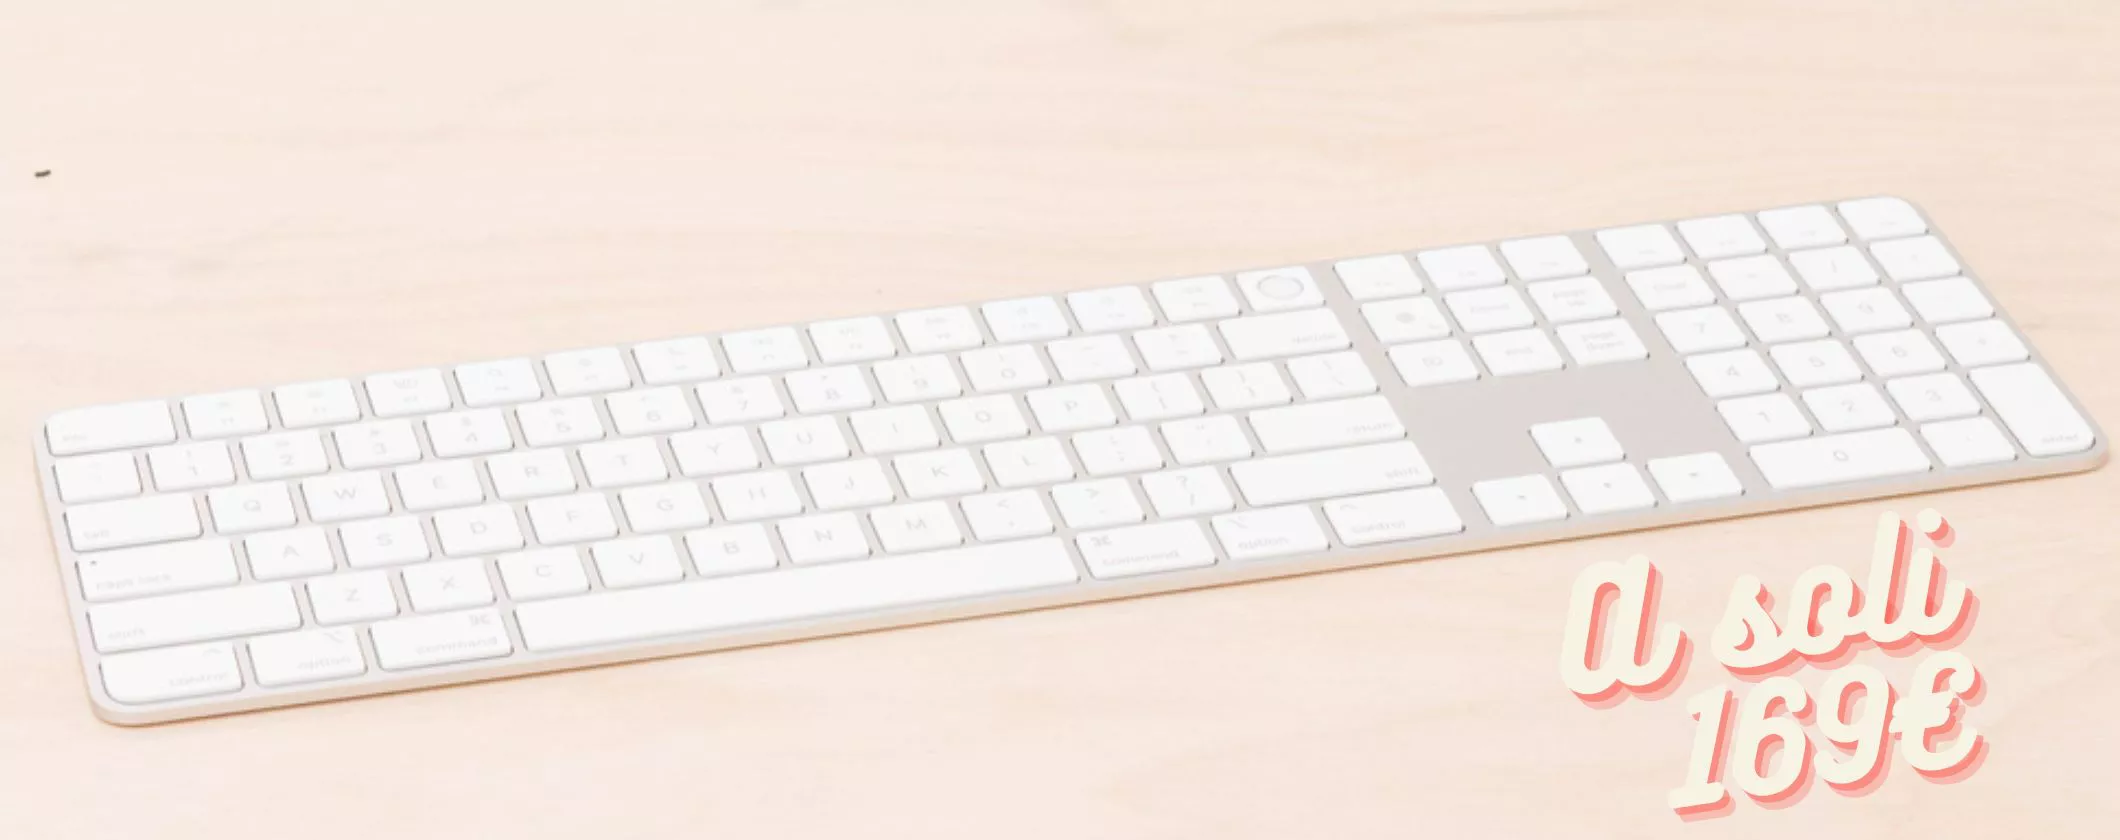 Acquista la Magic Keyboard ad un prezzo RIDICOLO su Amazon